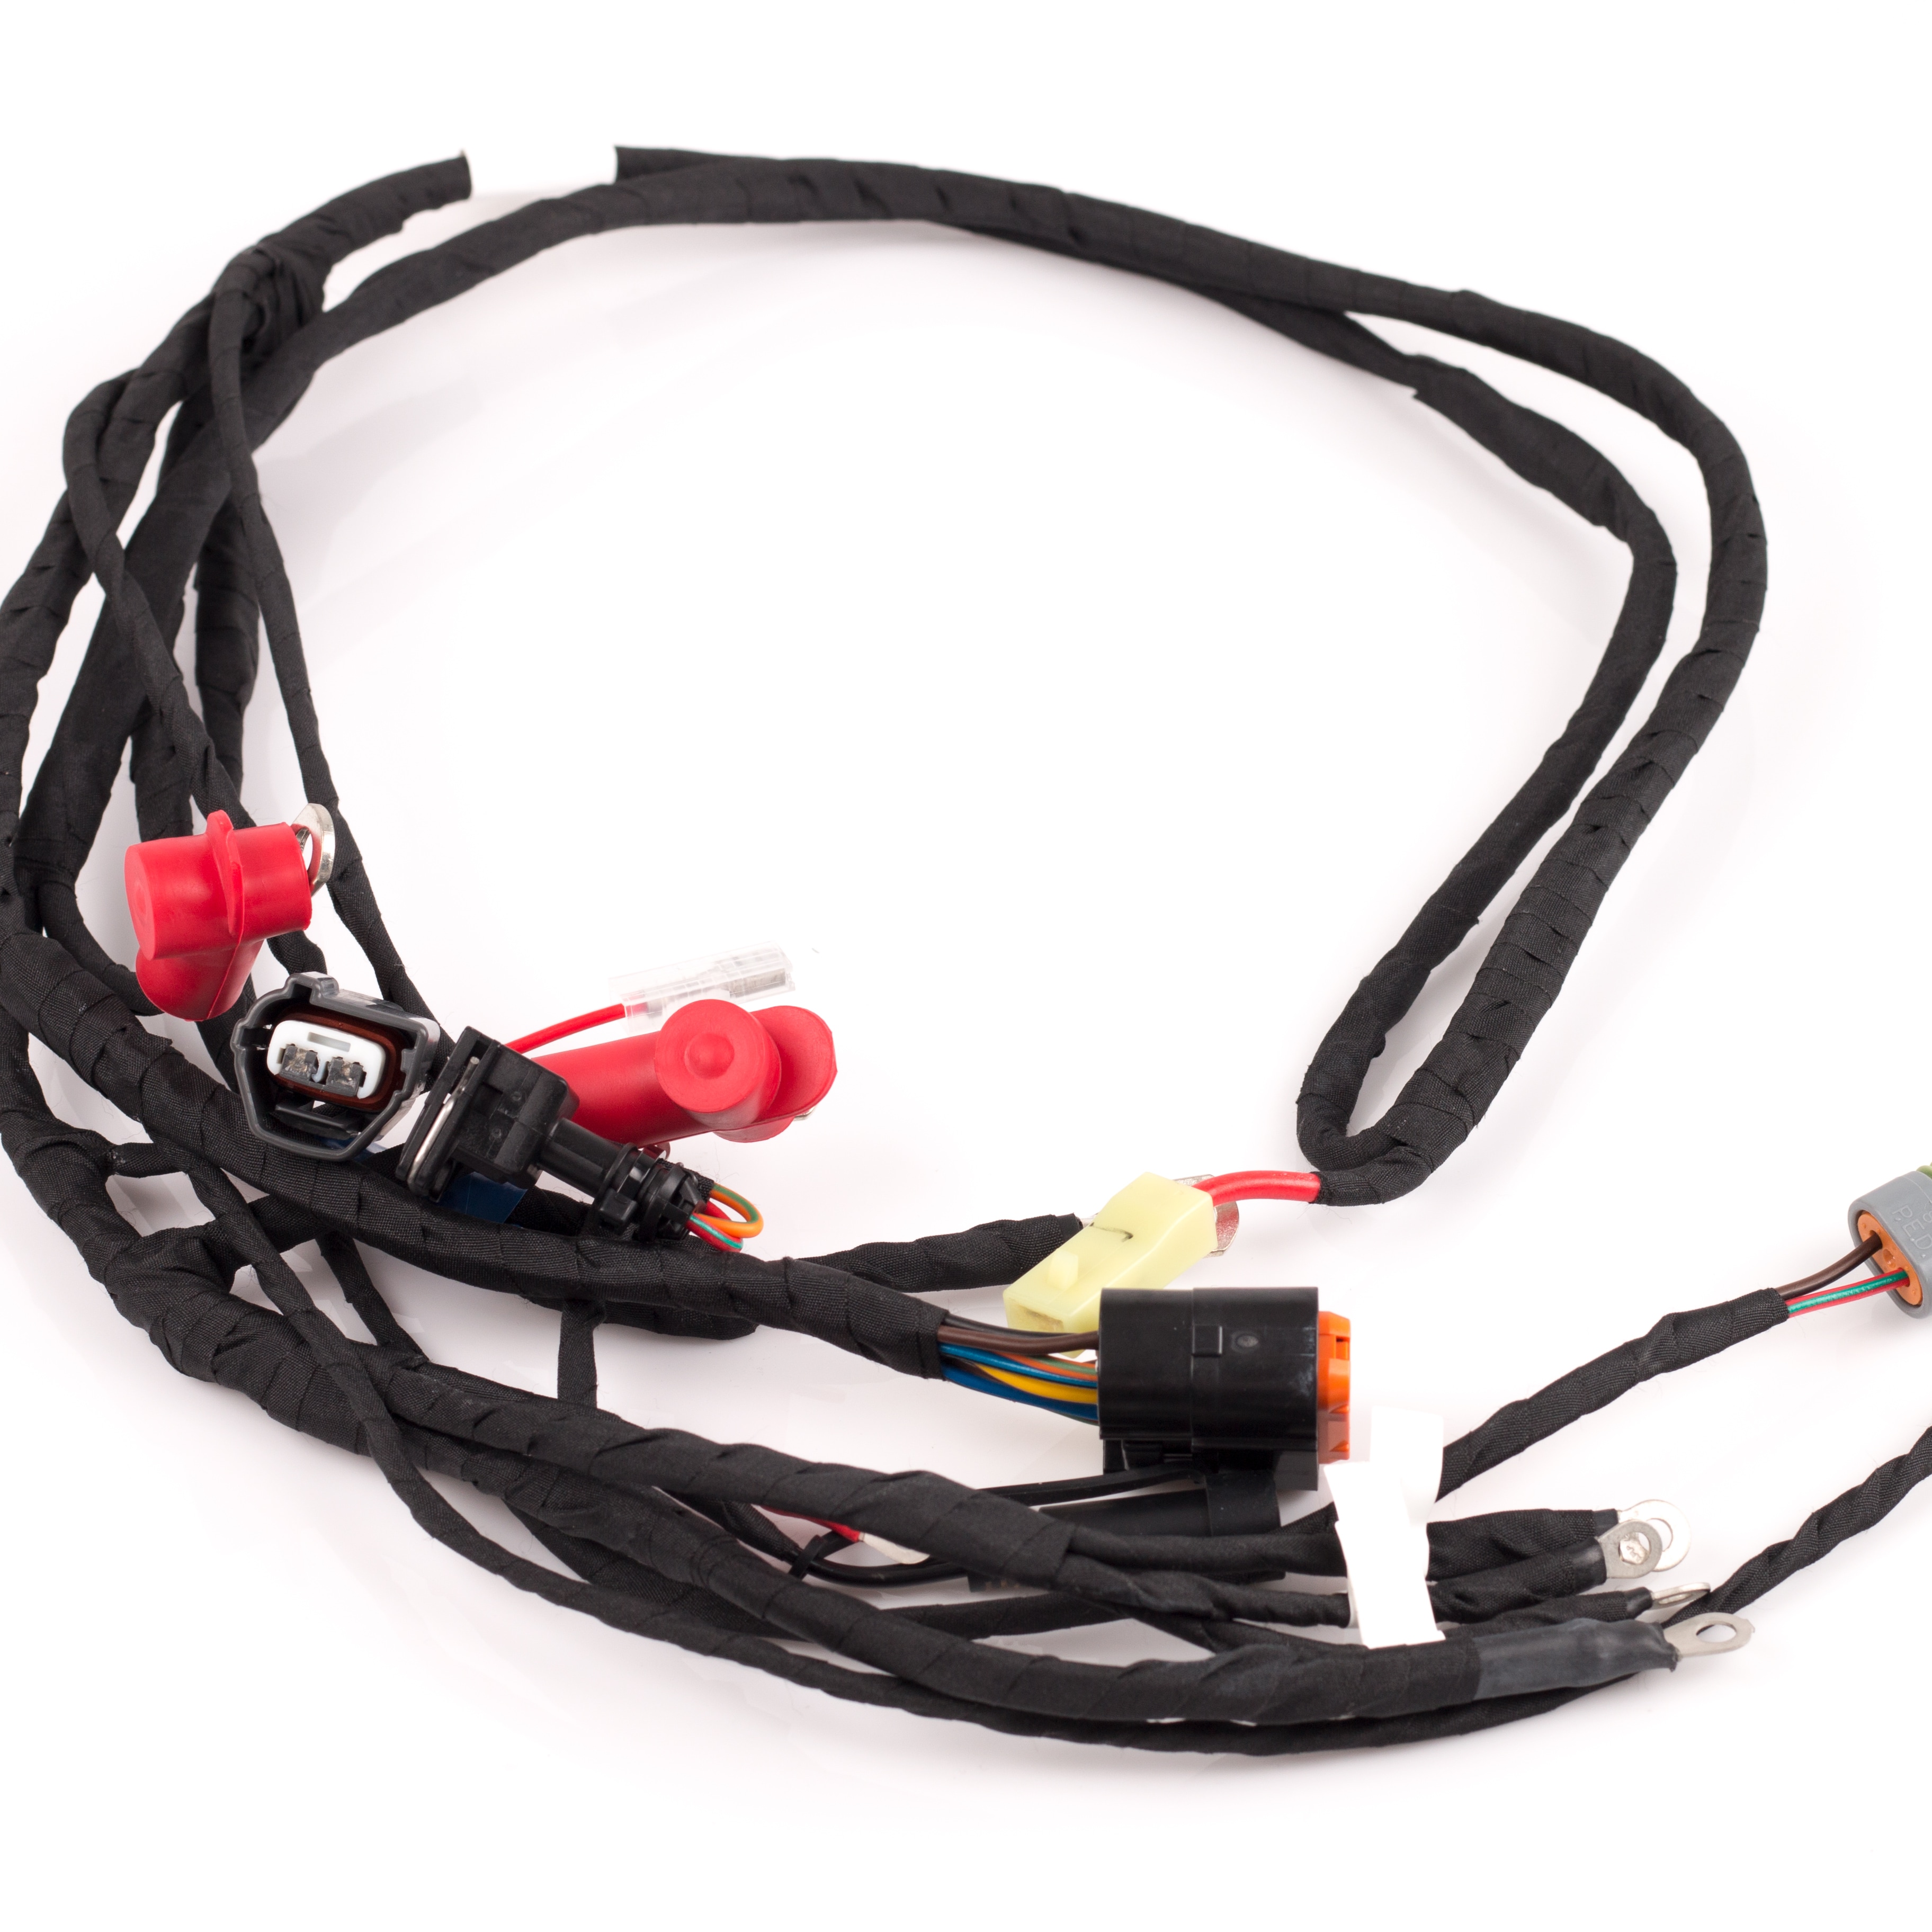 Cable harness Evo -16